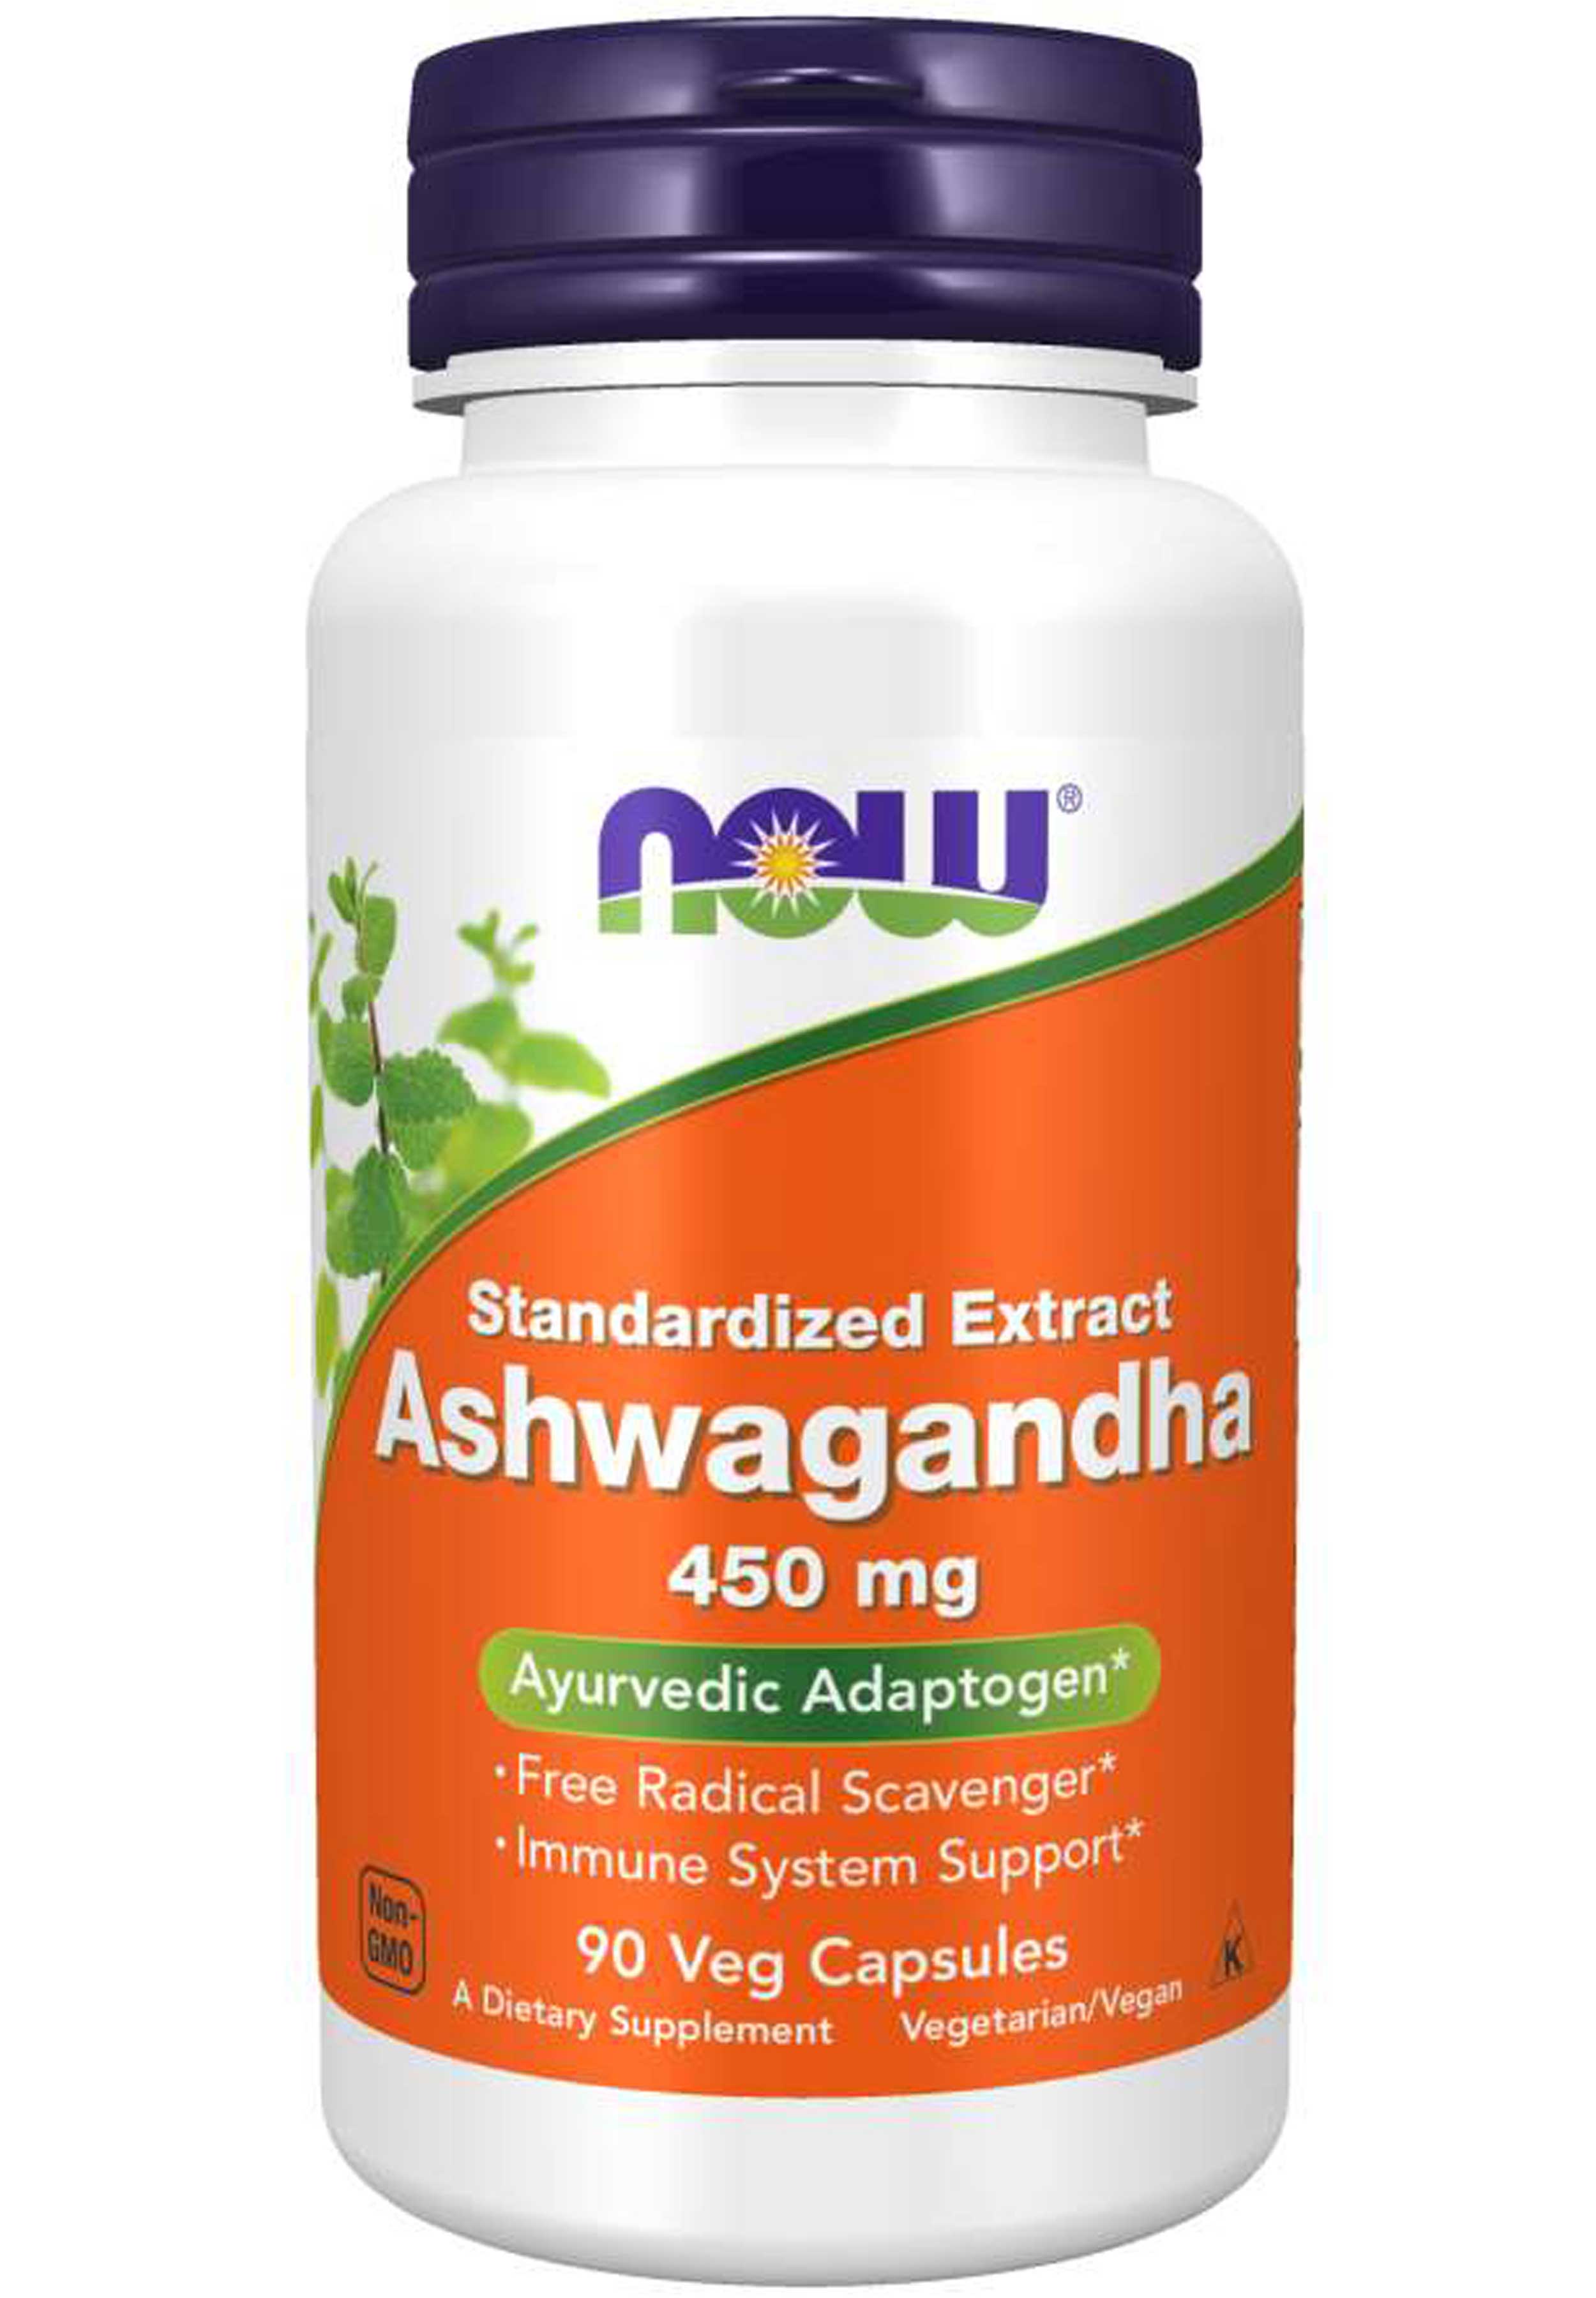 NOW Ashwagandha 450 mg